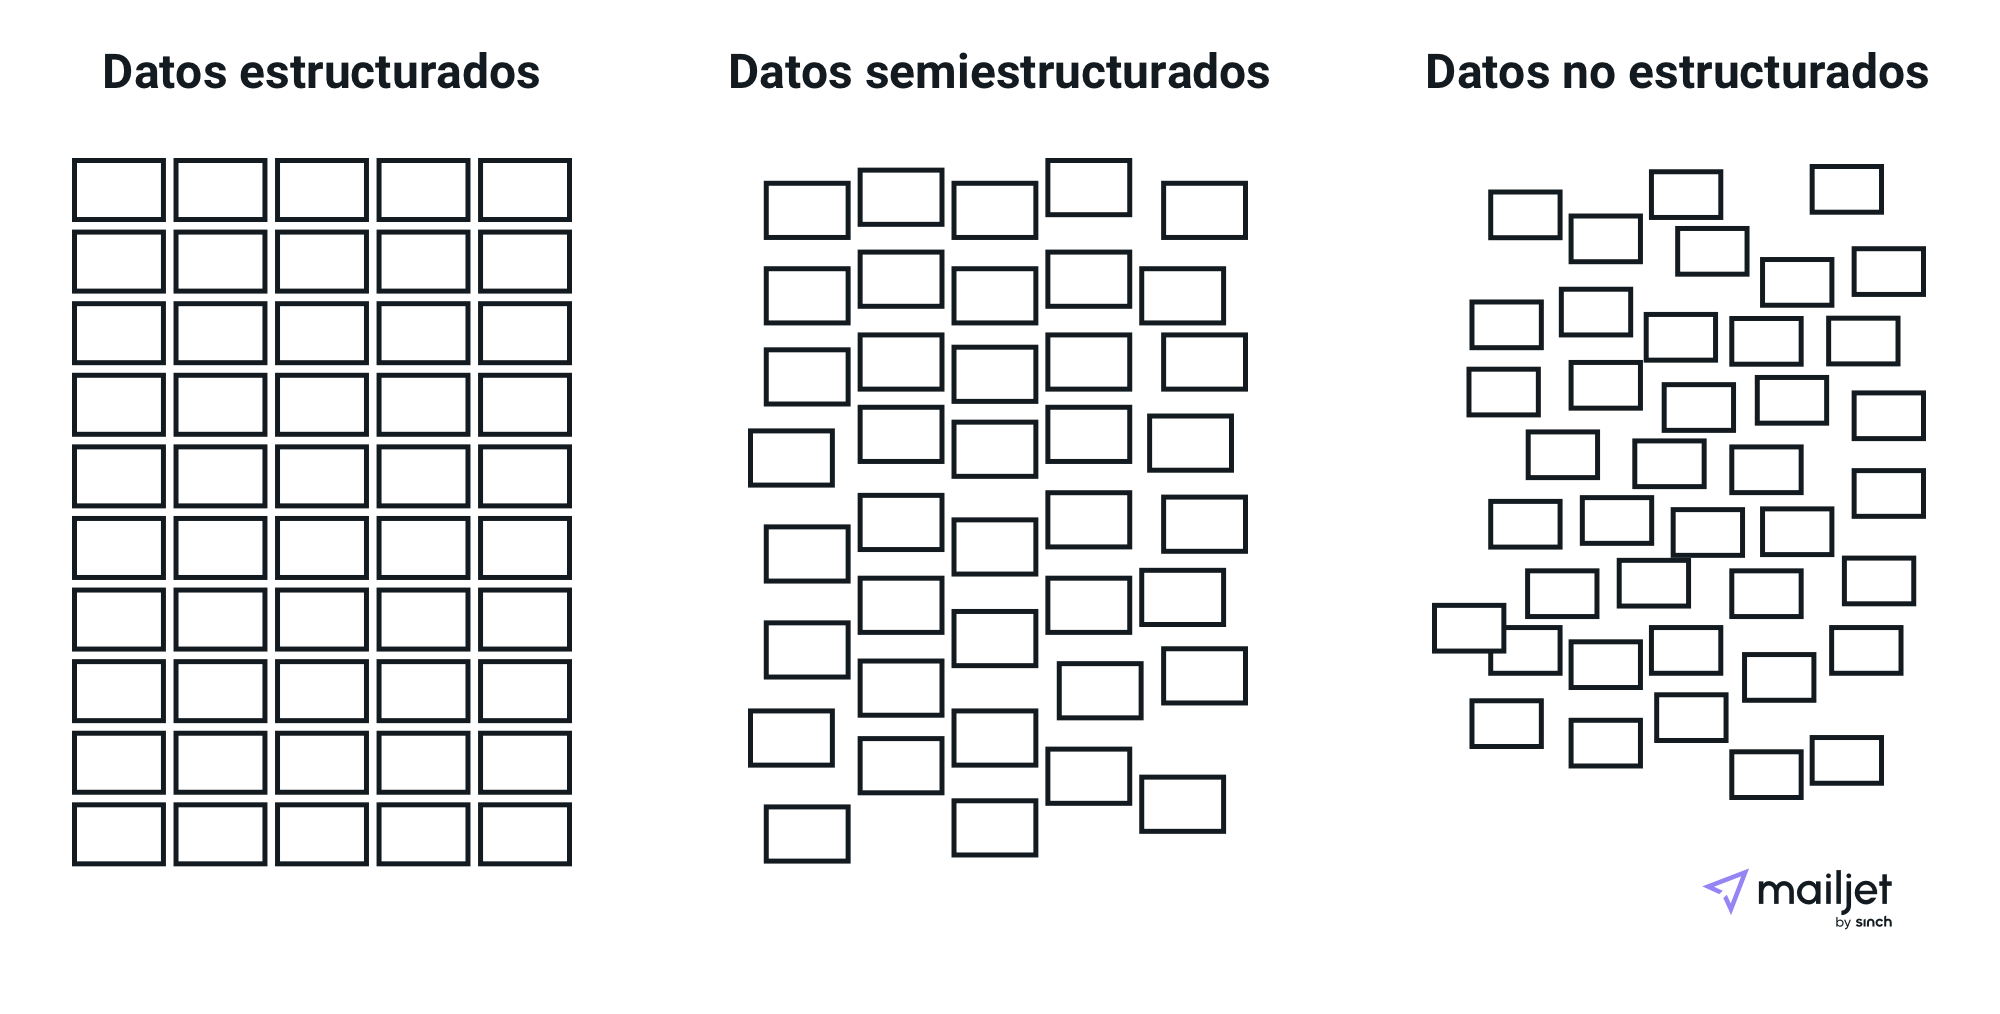 Representación visual de los tipos de Big Data (estructurados, semiestructurados y no estructurados)